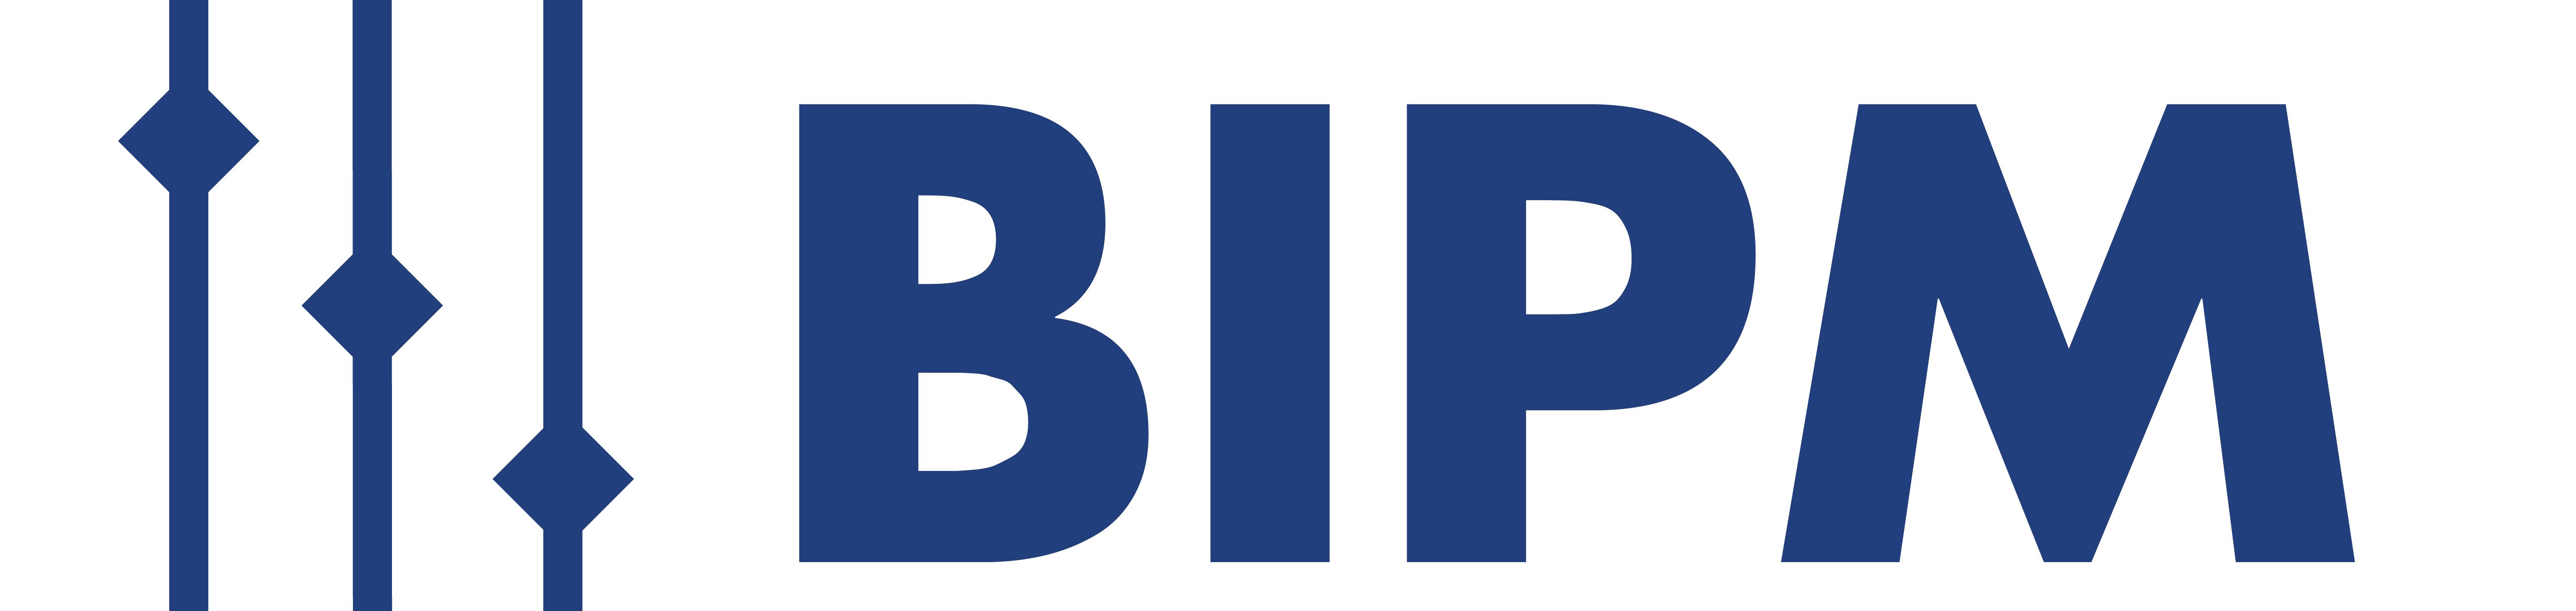 Bureau International des Poids et Mesures (BIPM)